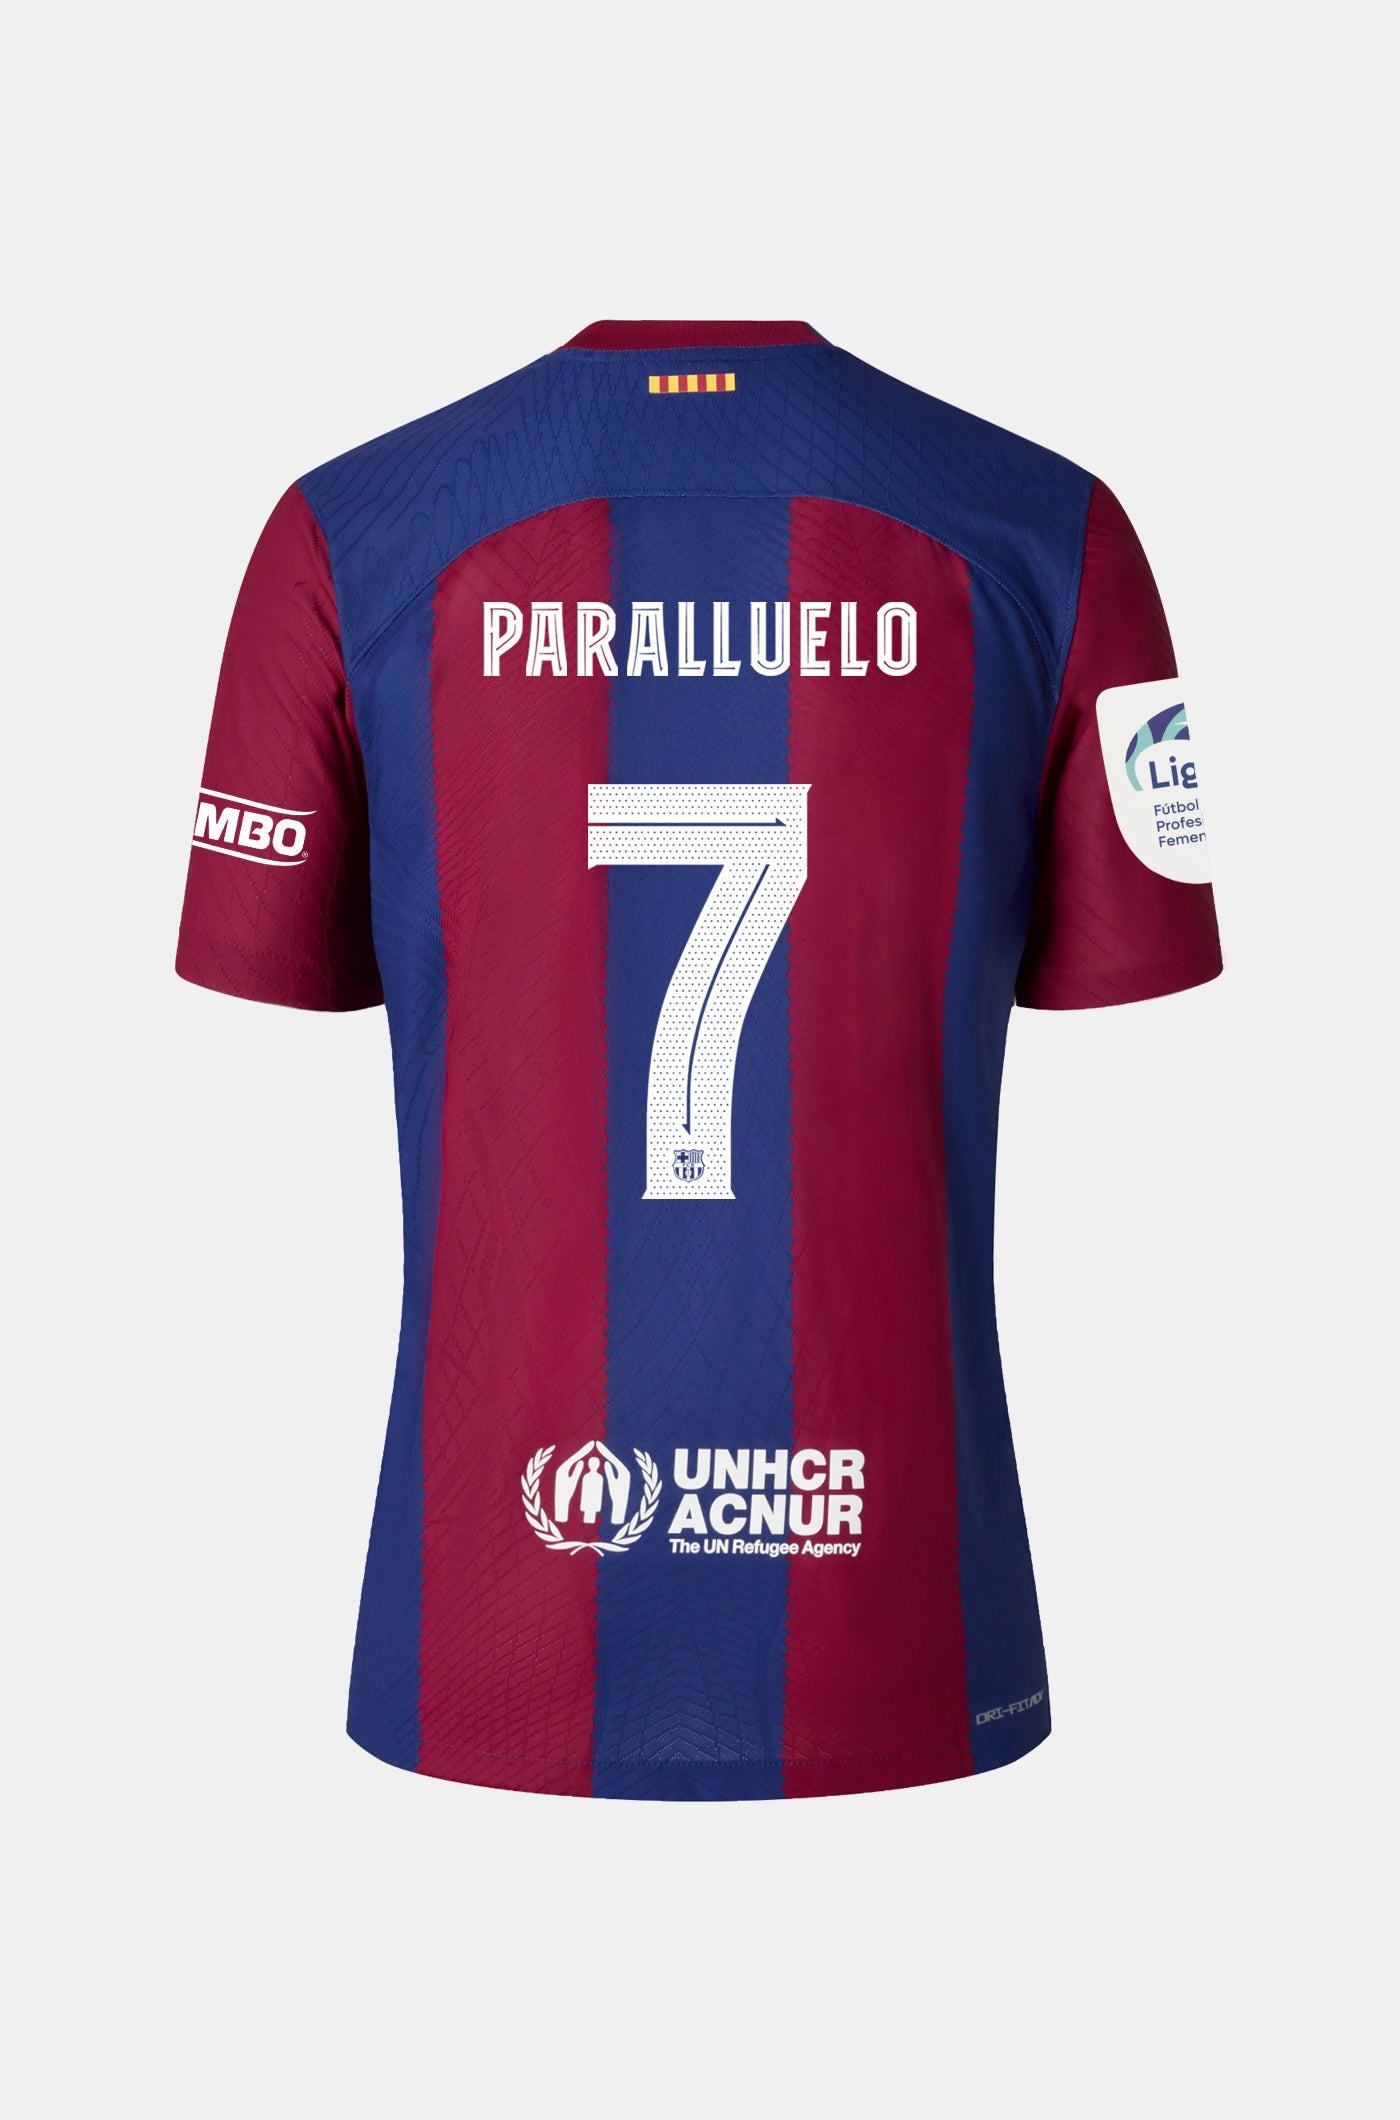 Liga F FC Barcelona home shirt 23/24 - Women - PARALLUELO